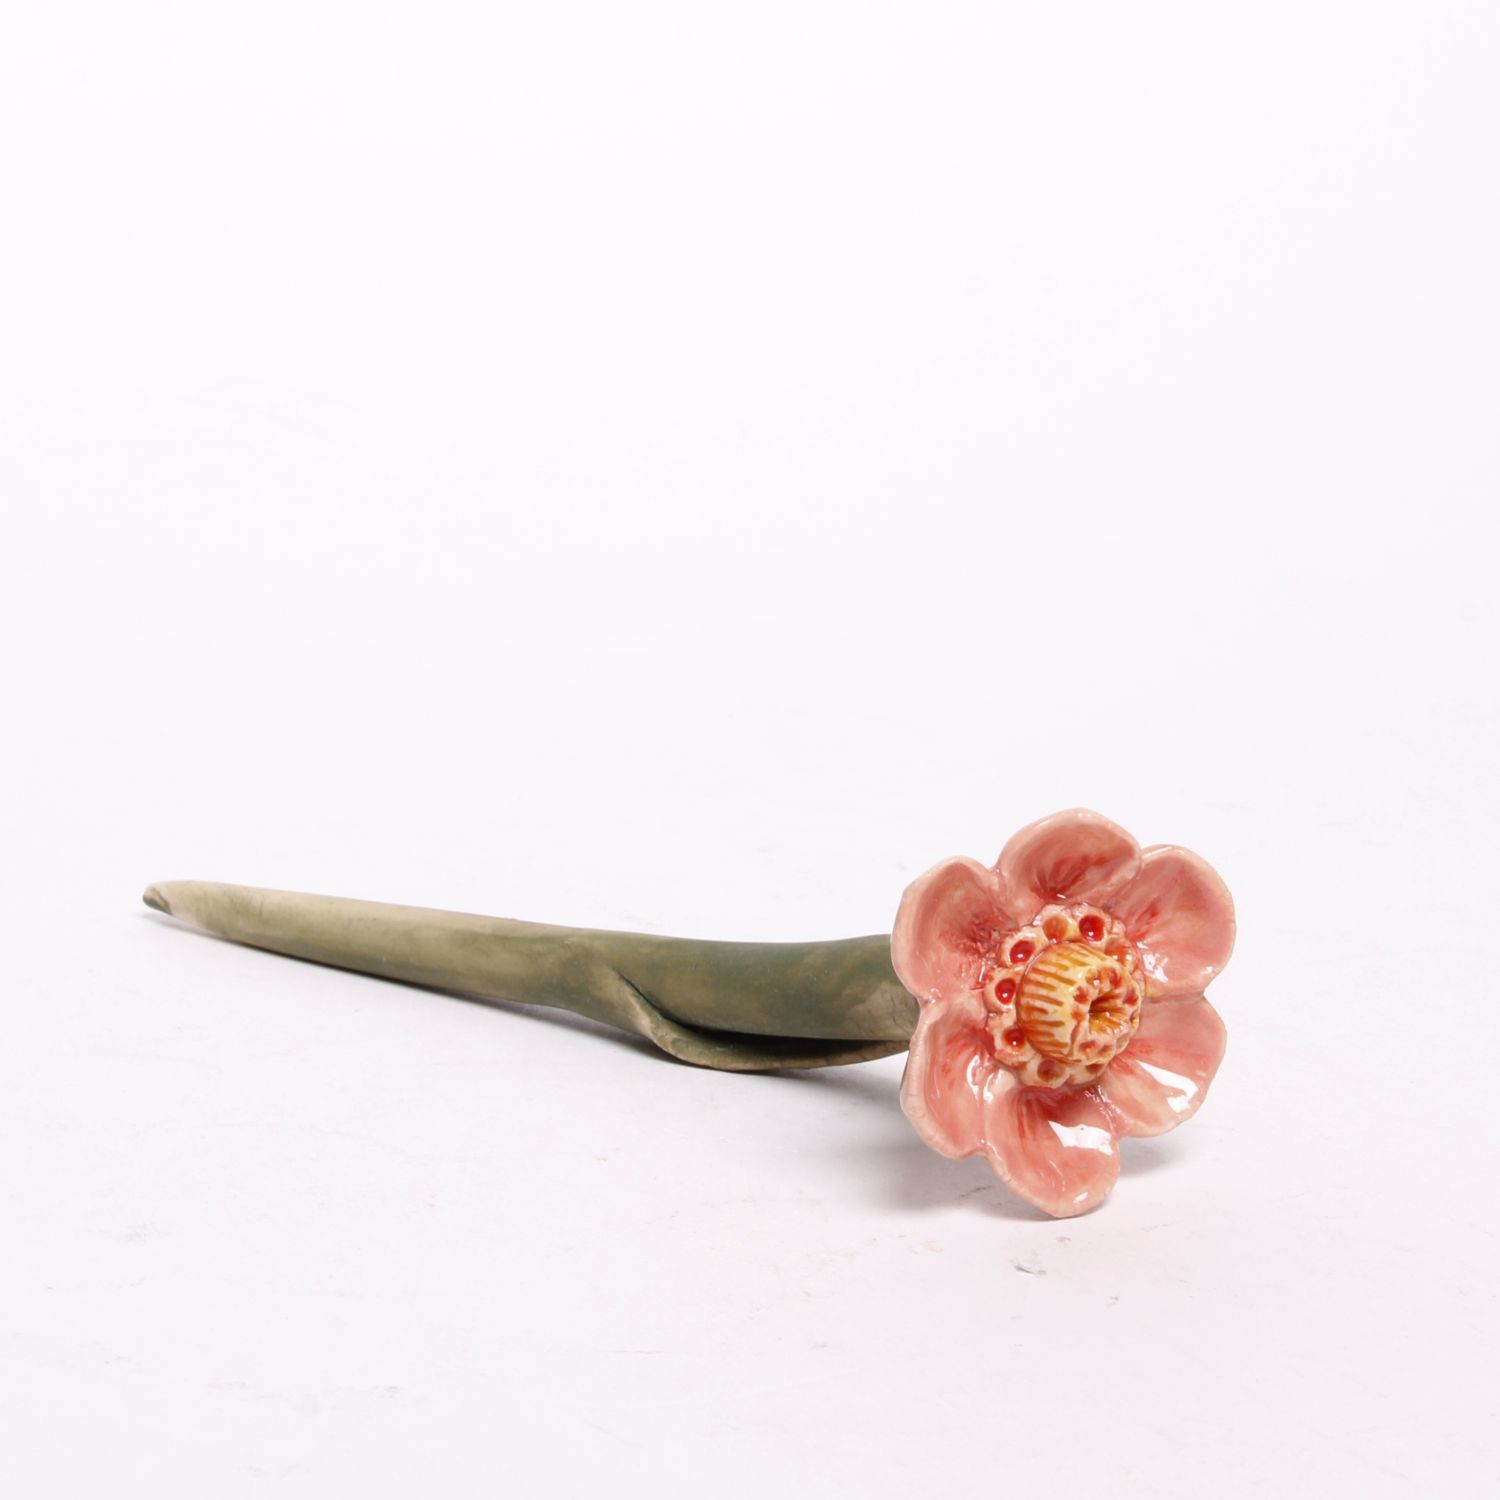 Eekta Trienekens: Narcissus Flowers (Each sold separately) Product Image 4 of 7